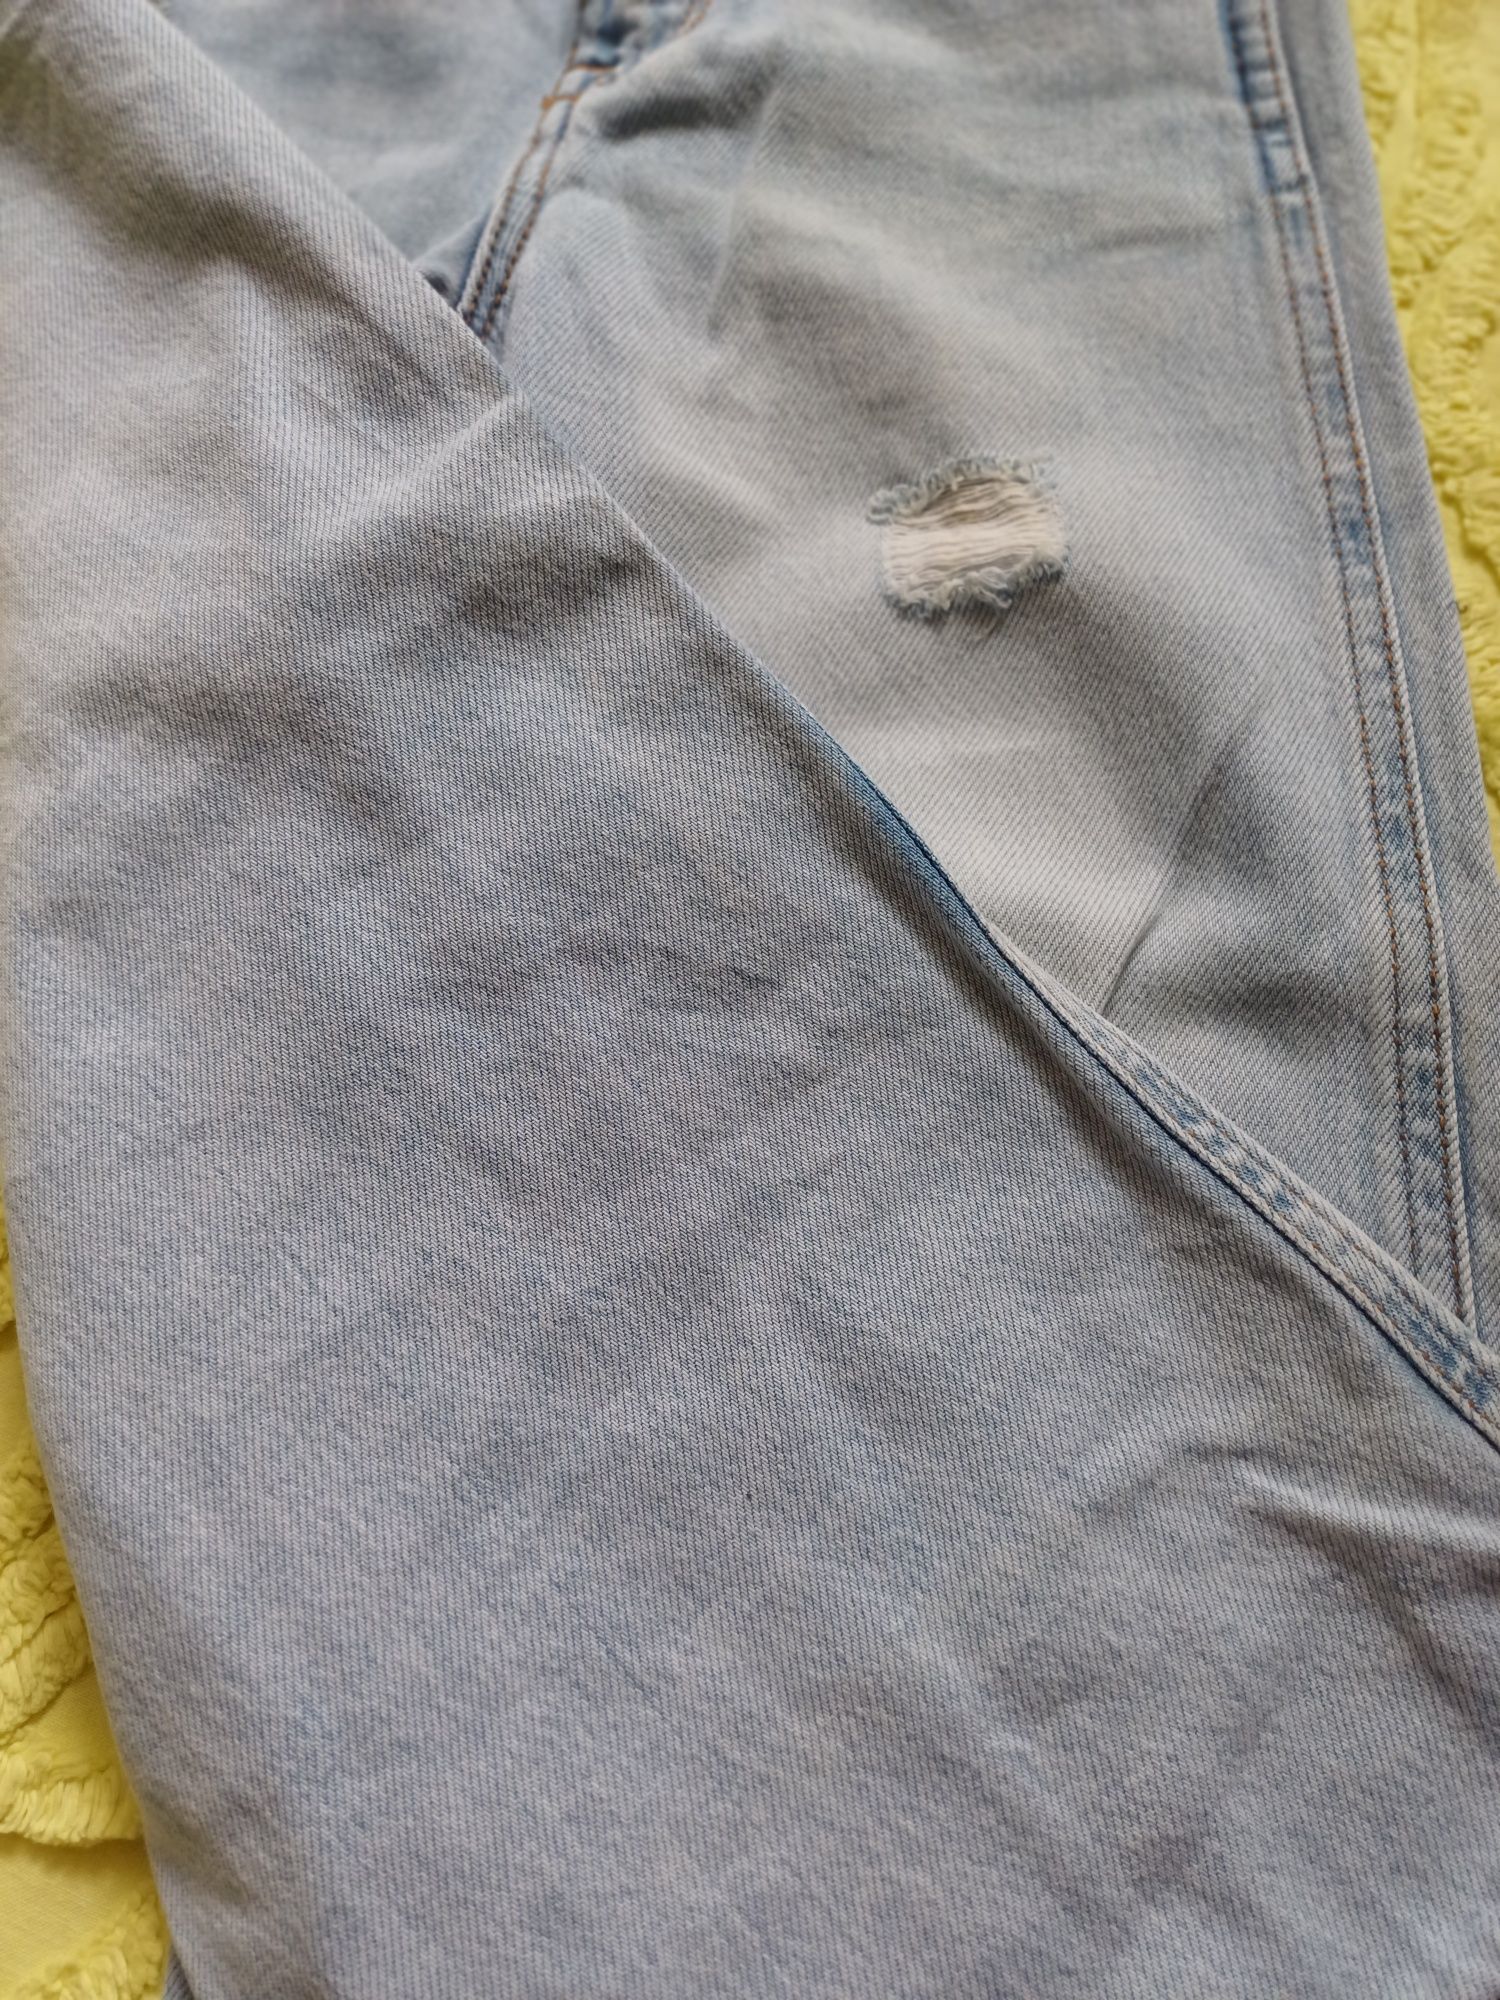 Широкі  світлі джинси zara весна- літо 4-5  років